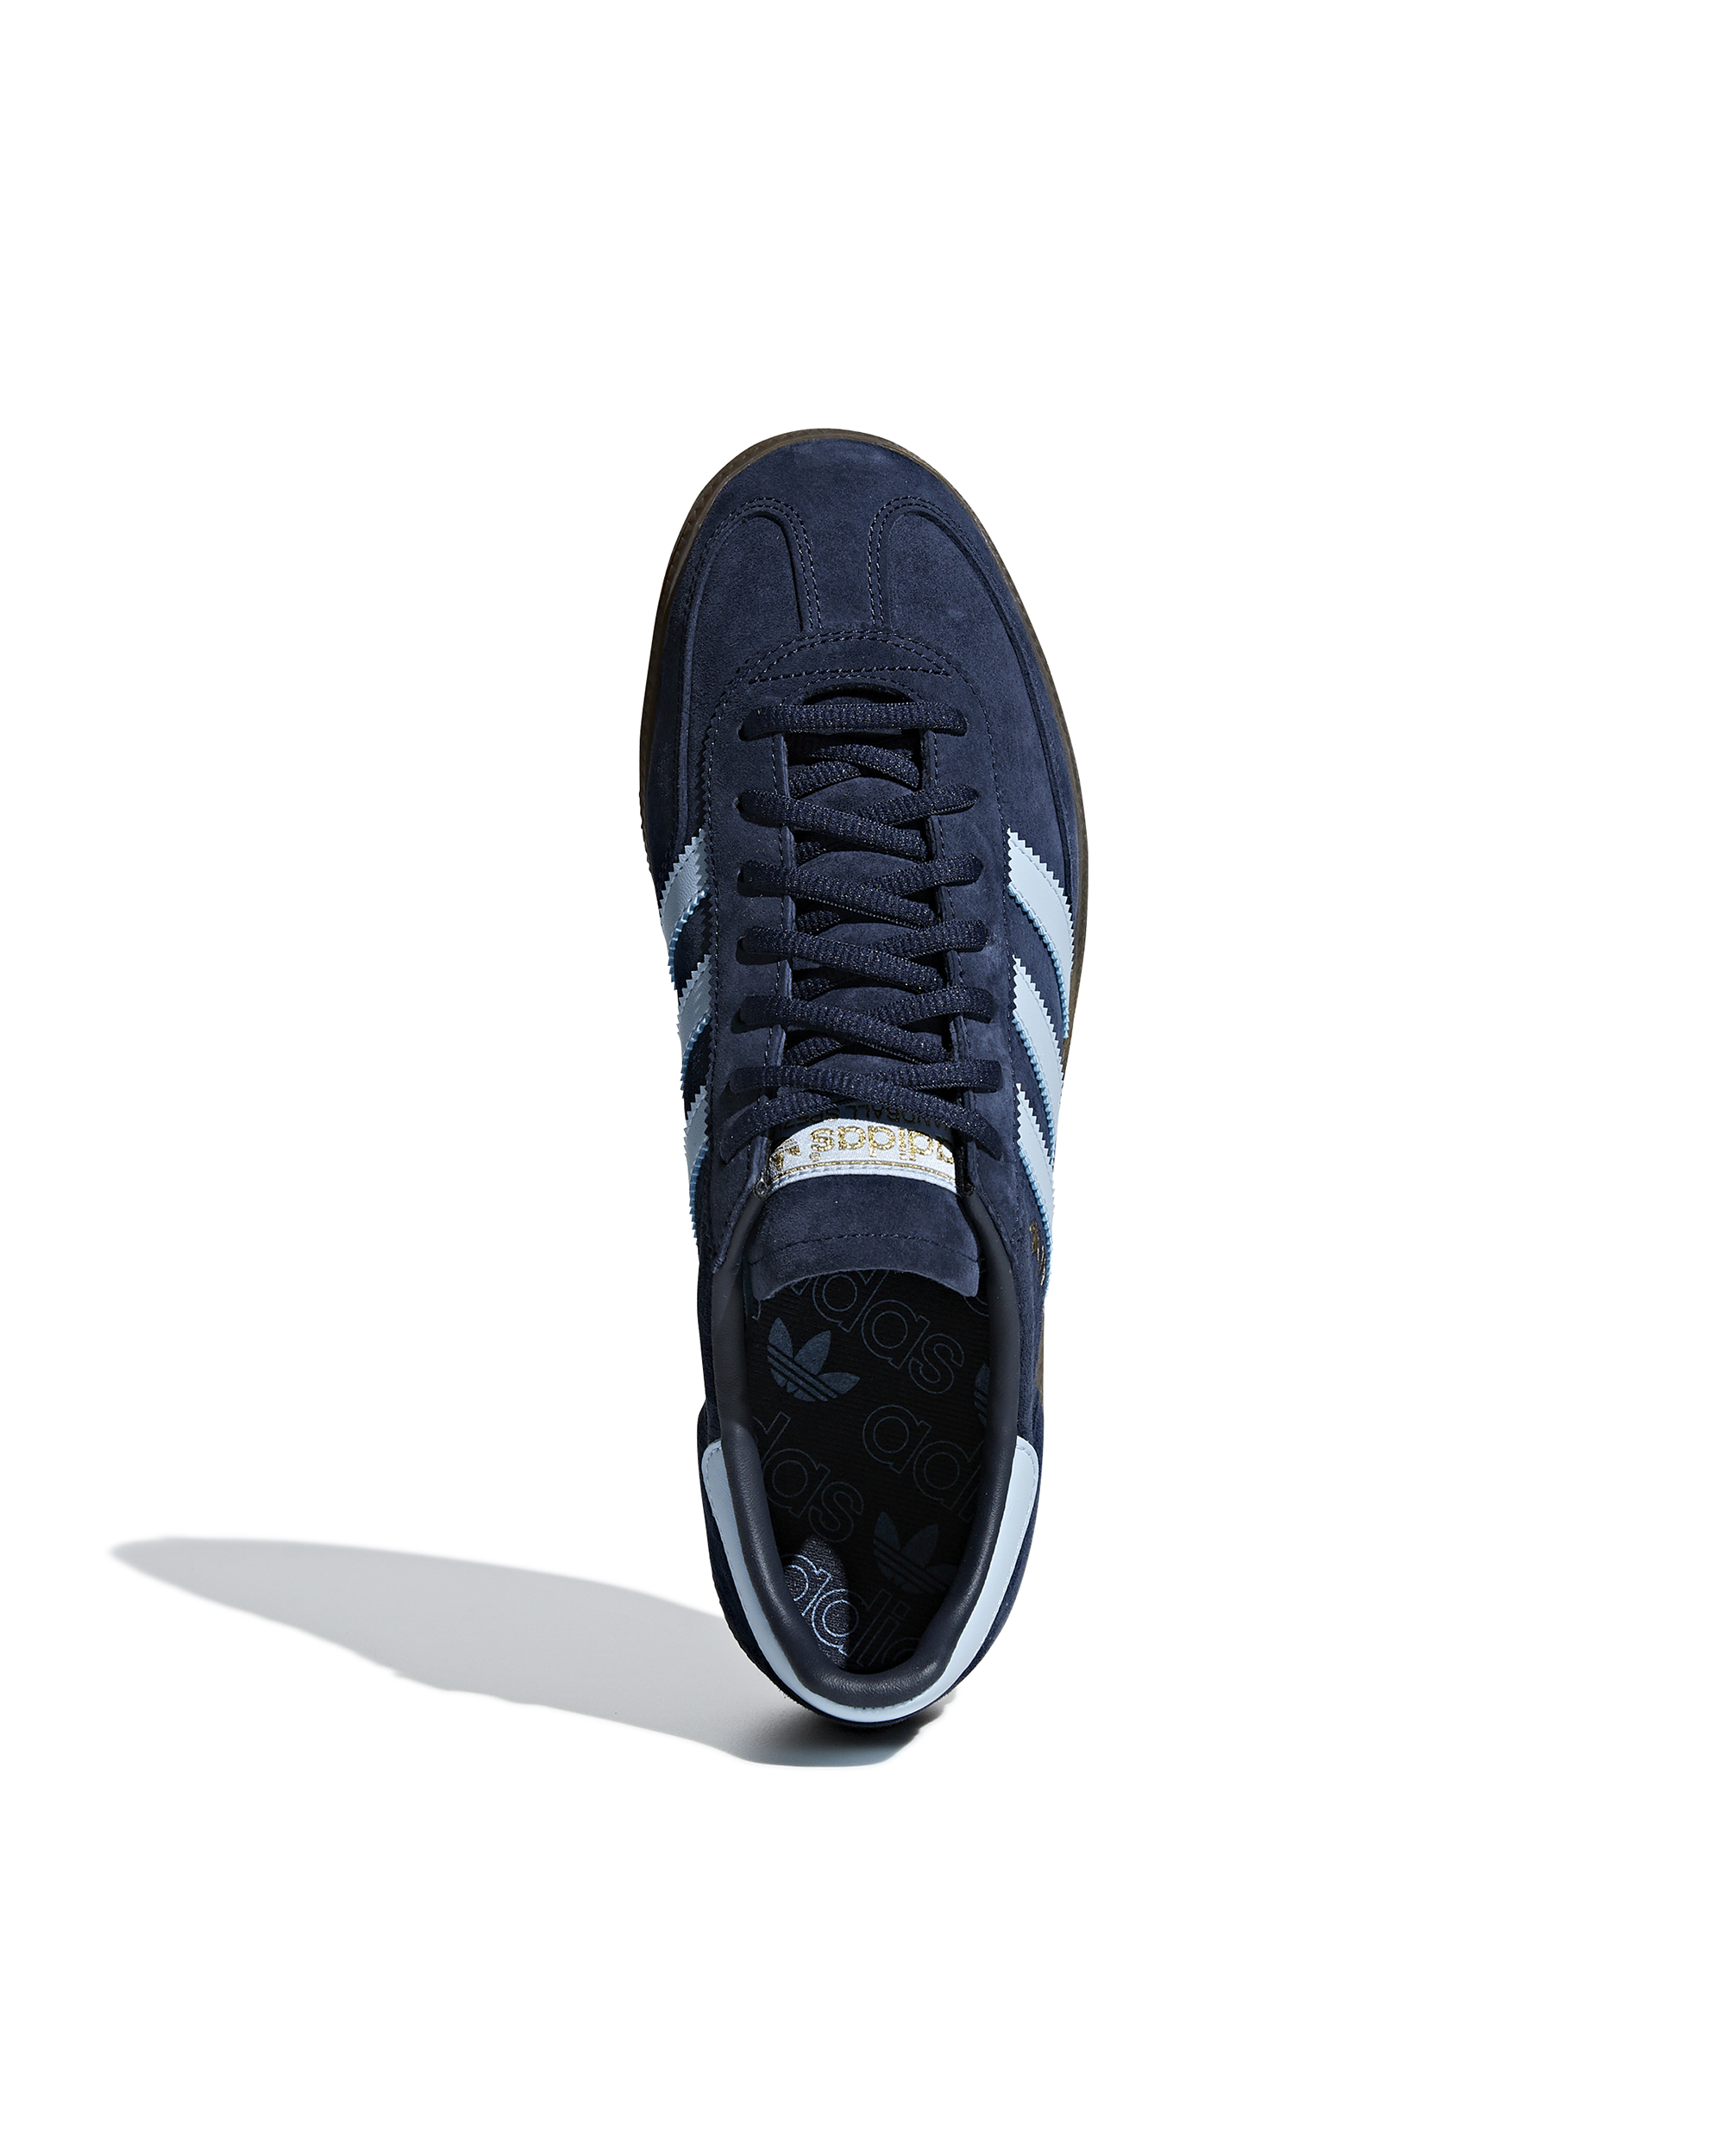 Shop Adidas Originals Sneaker Handball Special Blue In Conavy/clesky/gum5